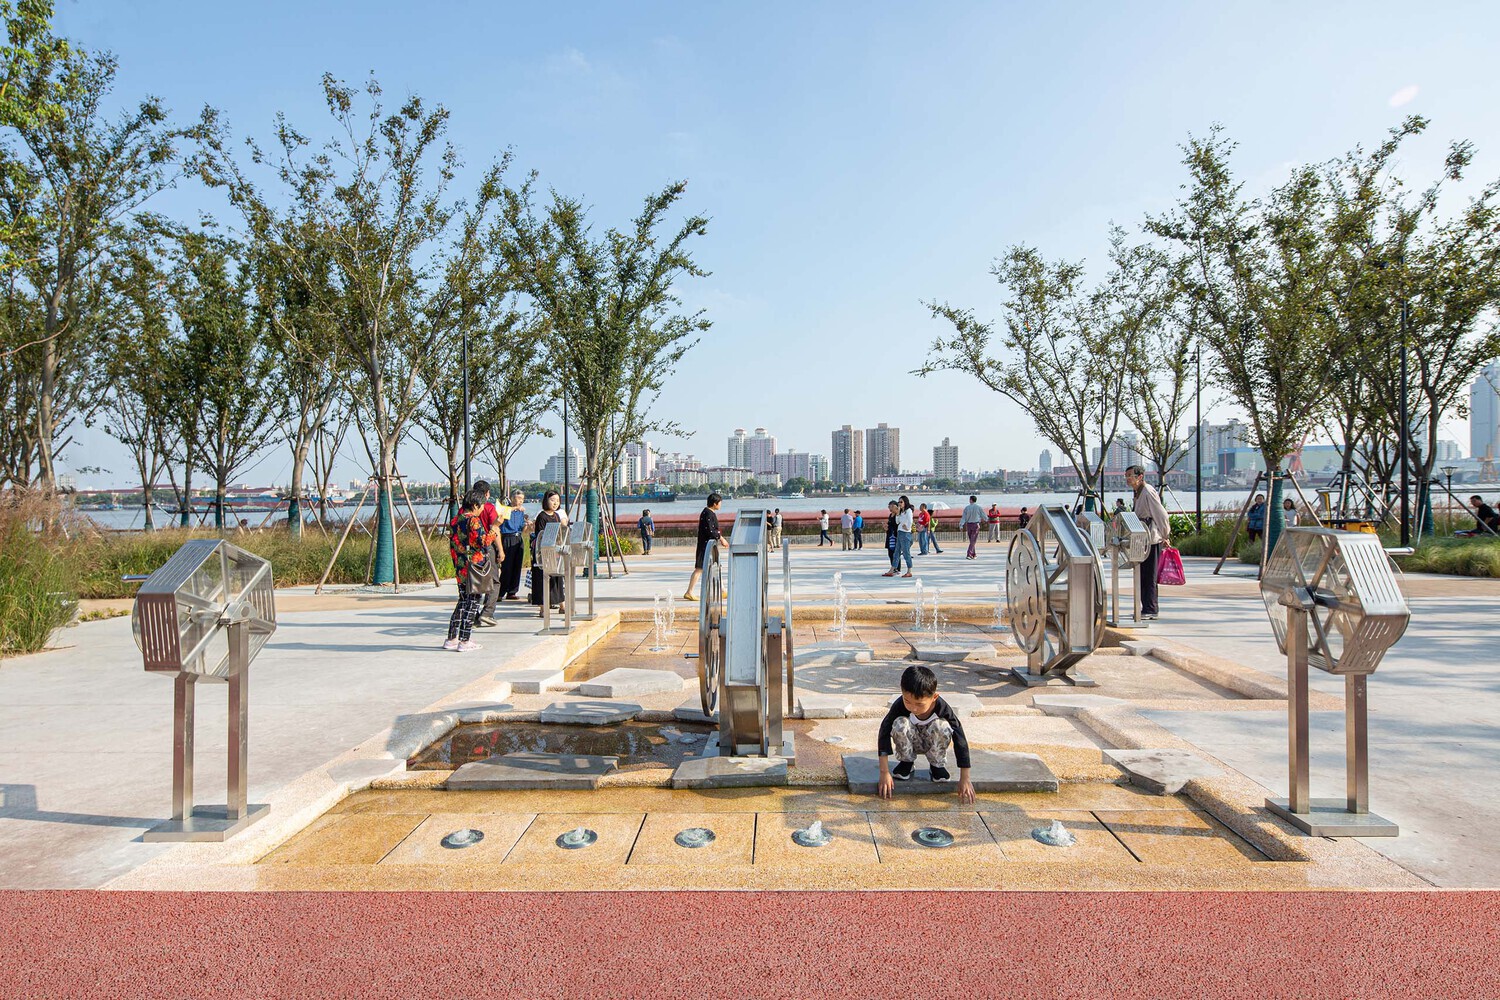 فضای عمومی کنار رودخانه یانگپو طراحی شده توسط شرکت معماری و محوطه سازی Da landscape